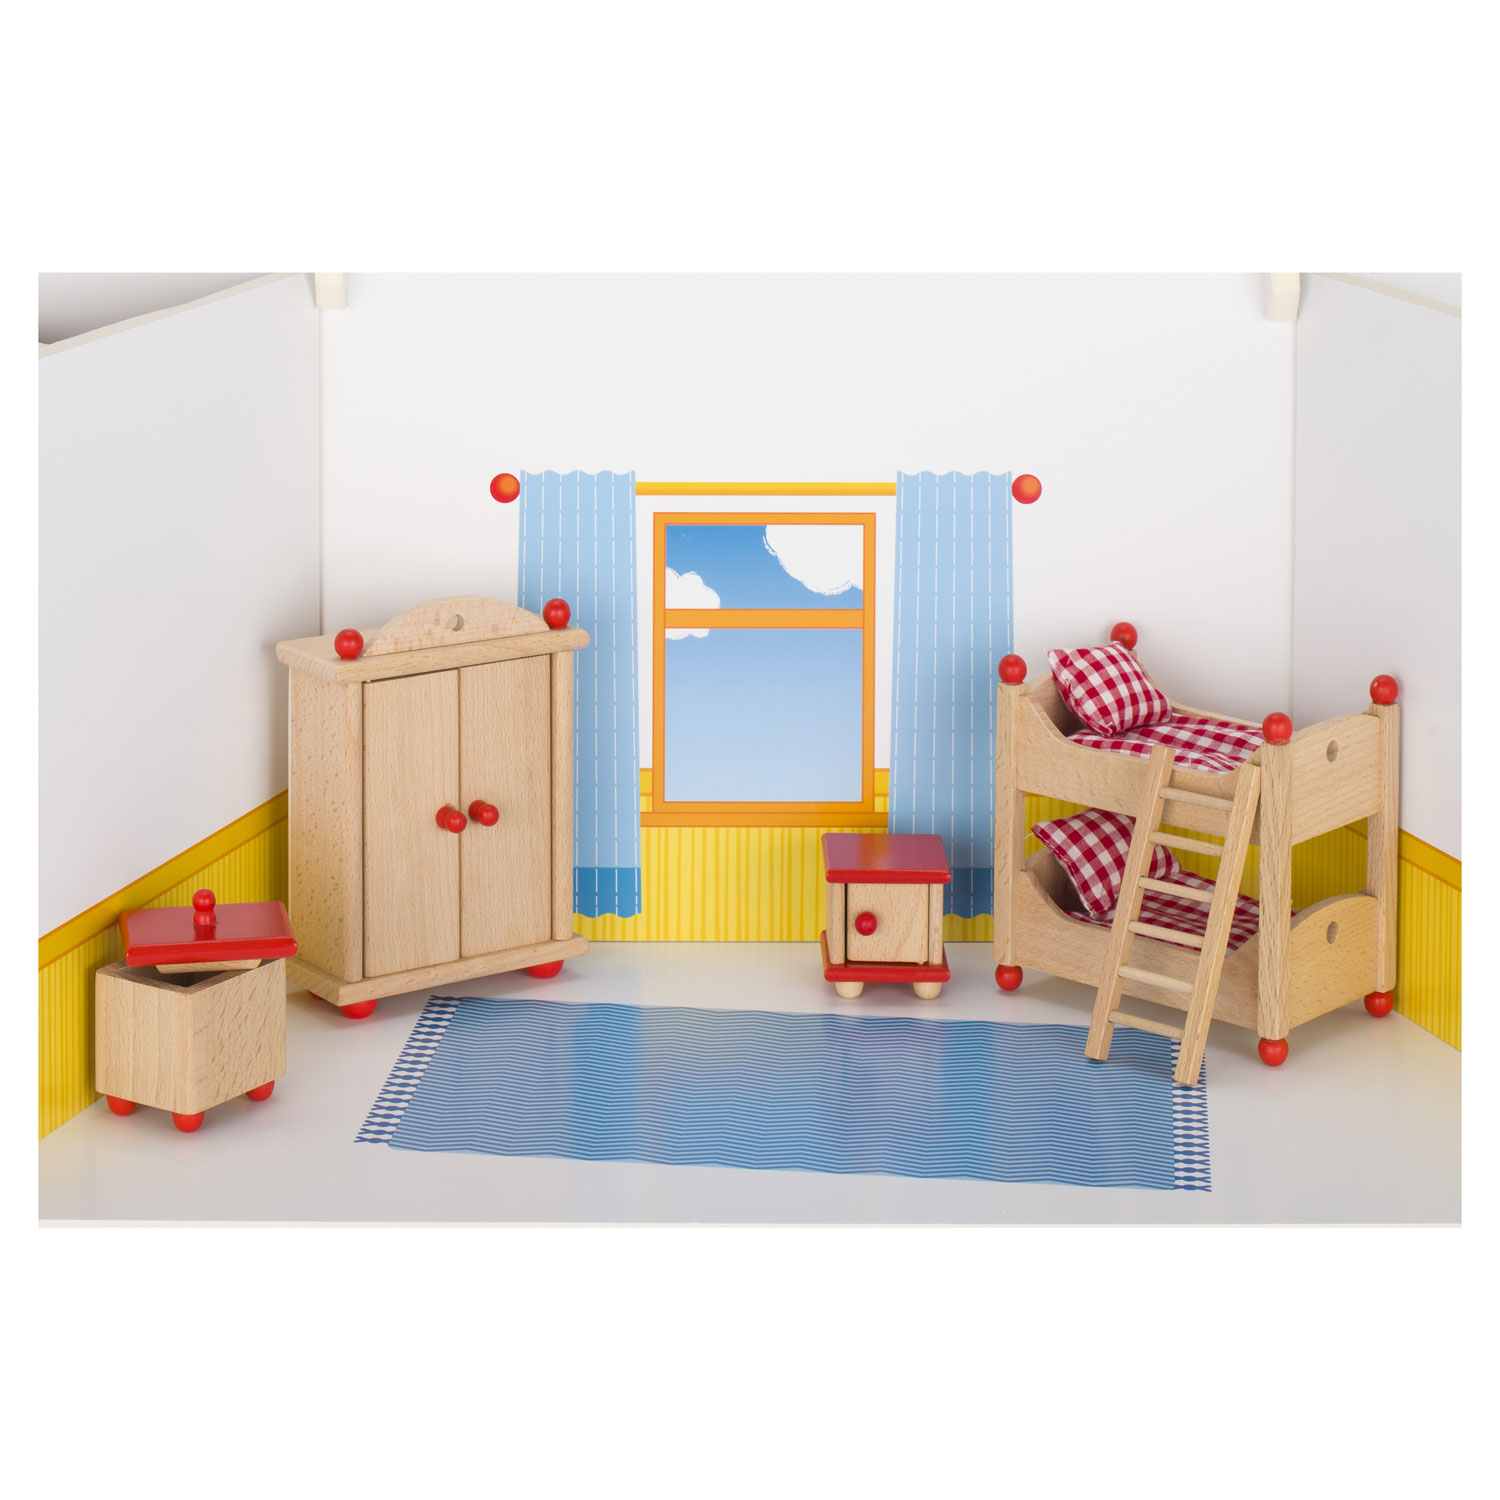 Meubles de maison de poupée Goki pour chambre d'enfant